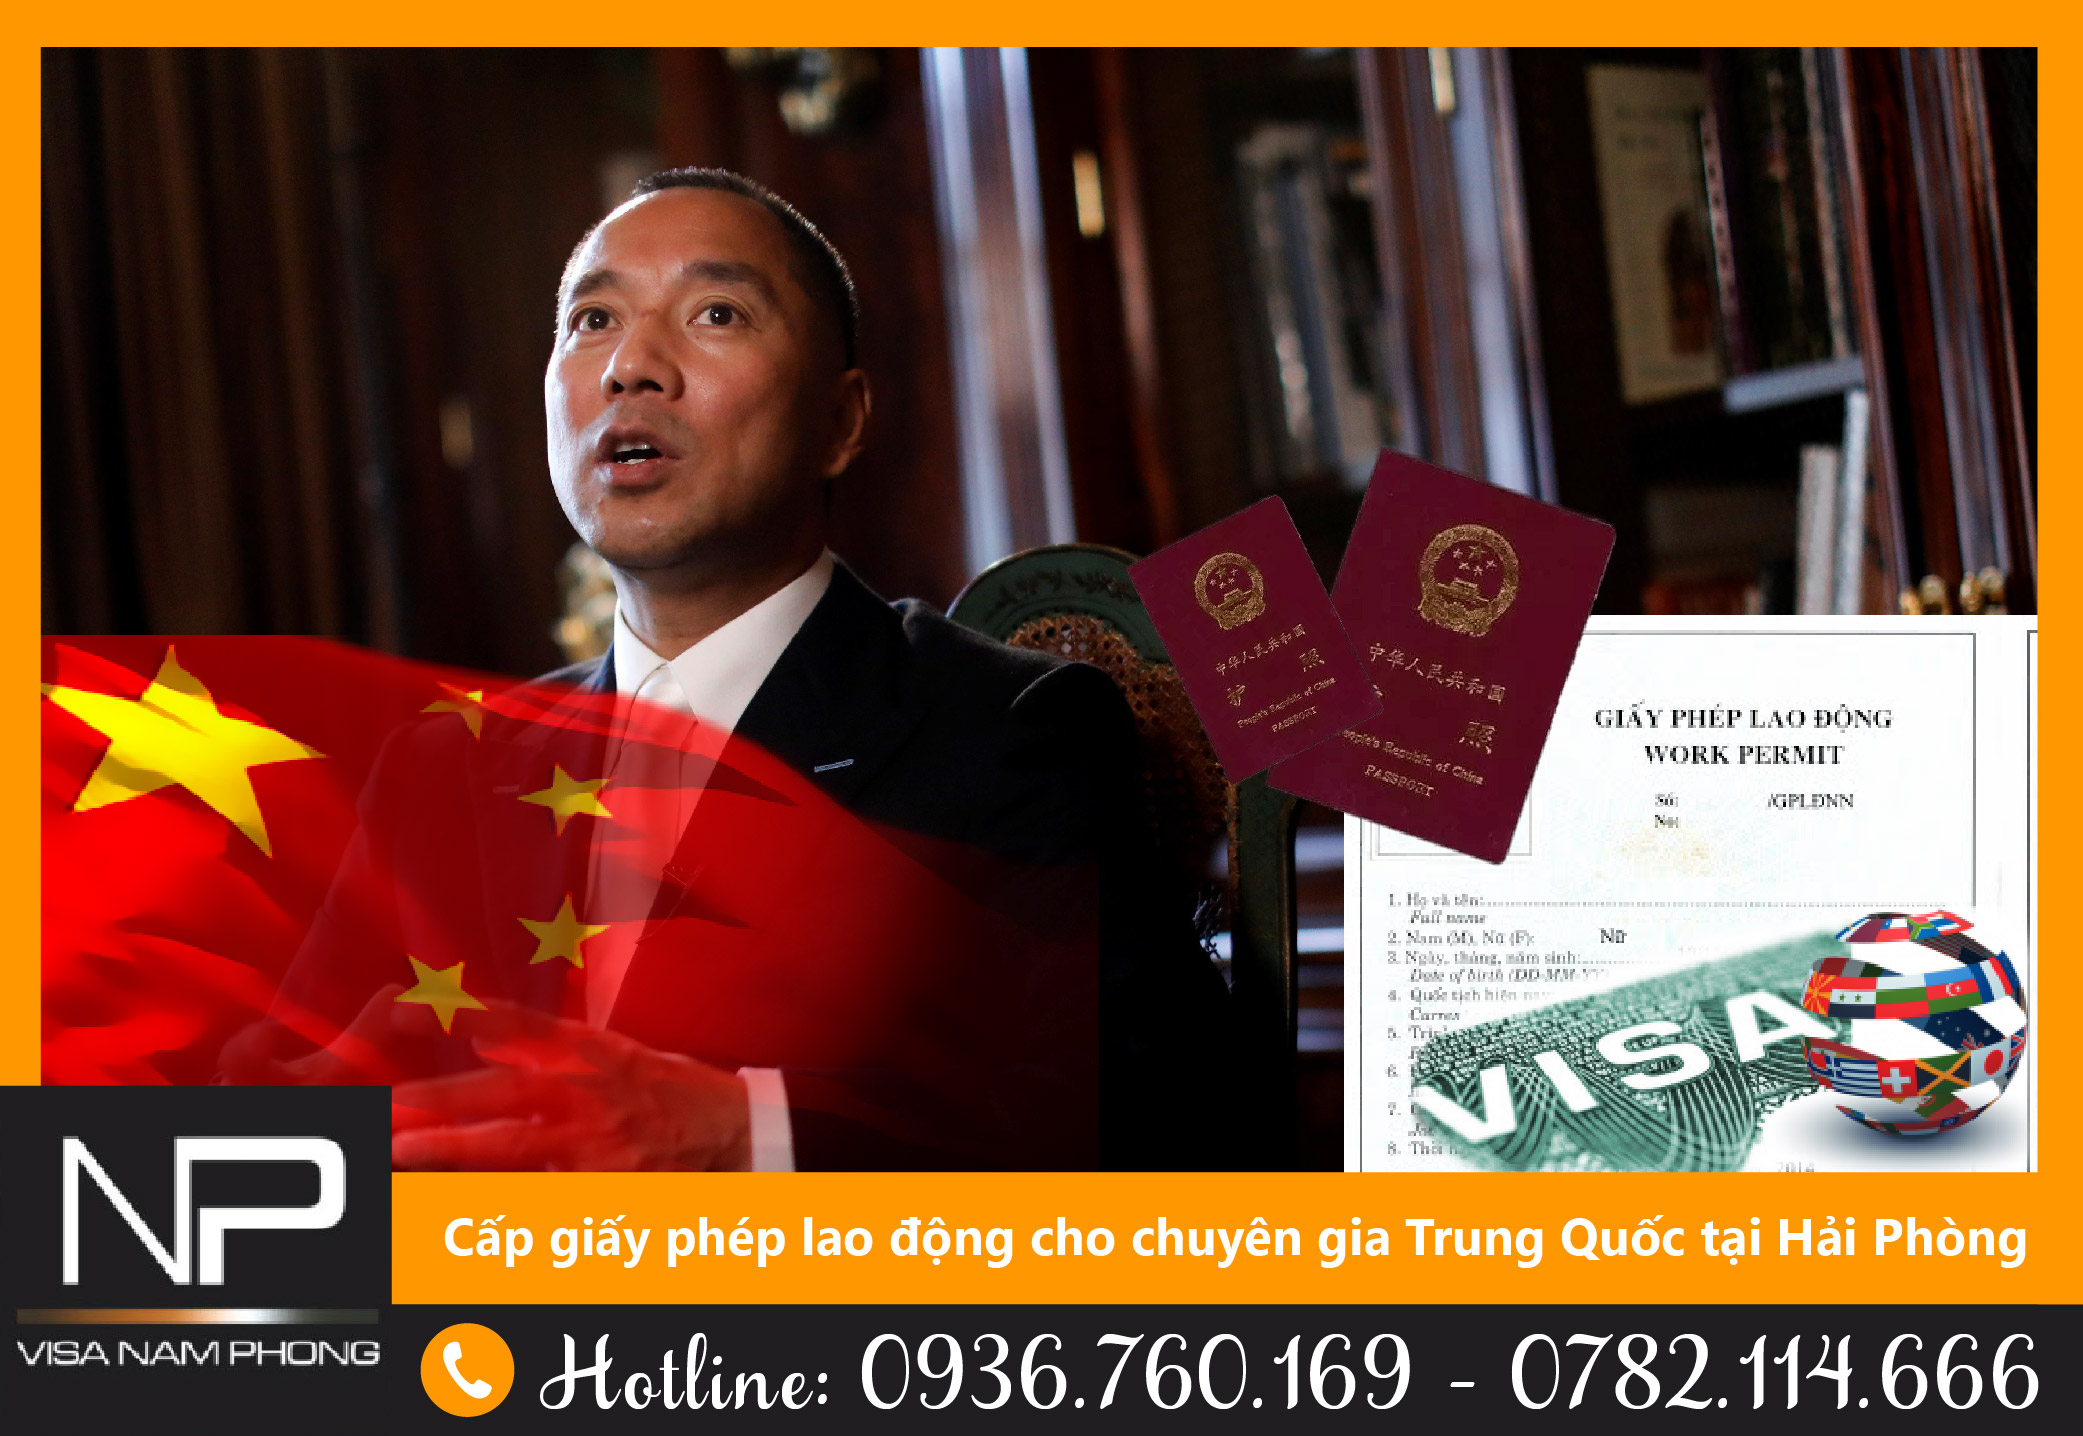 Cấp giấy phép lao động cho chuyên gia Trung quốc tại Hải Phòng